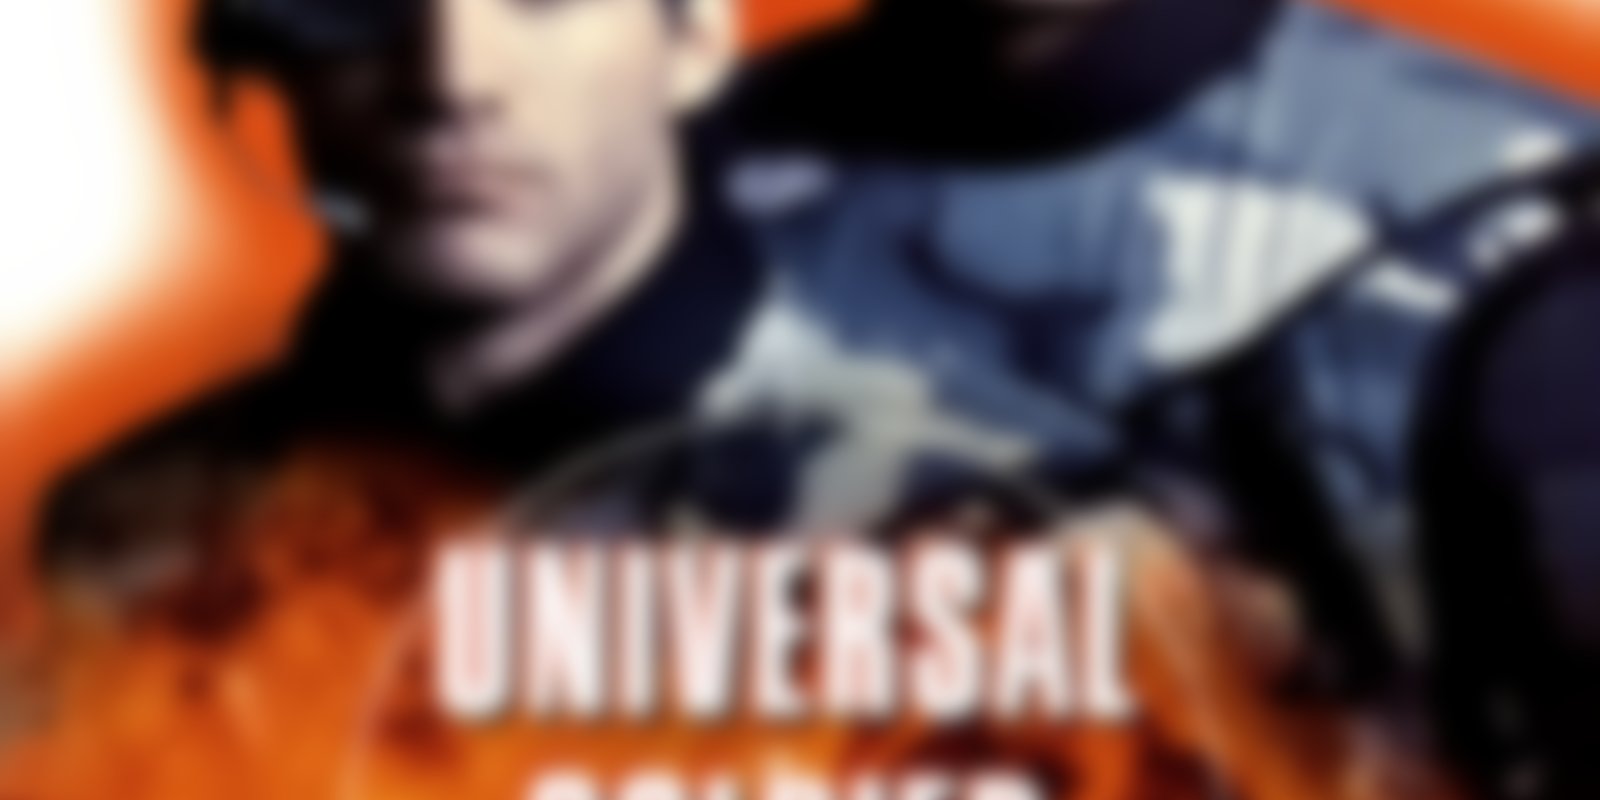 Universal Soldier 2